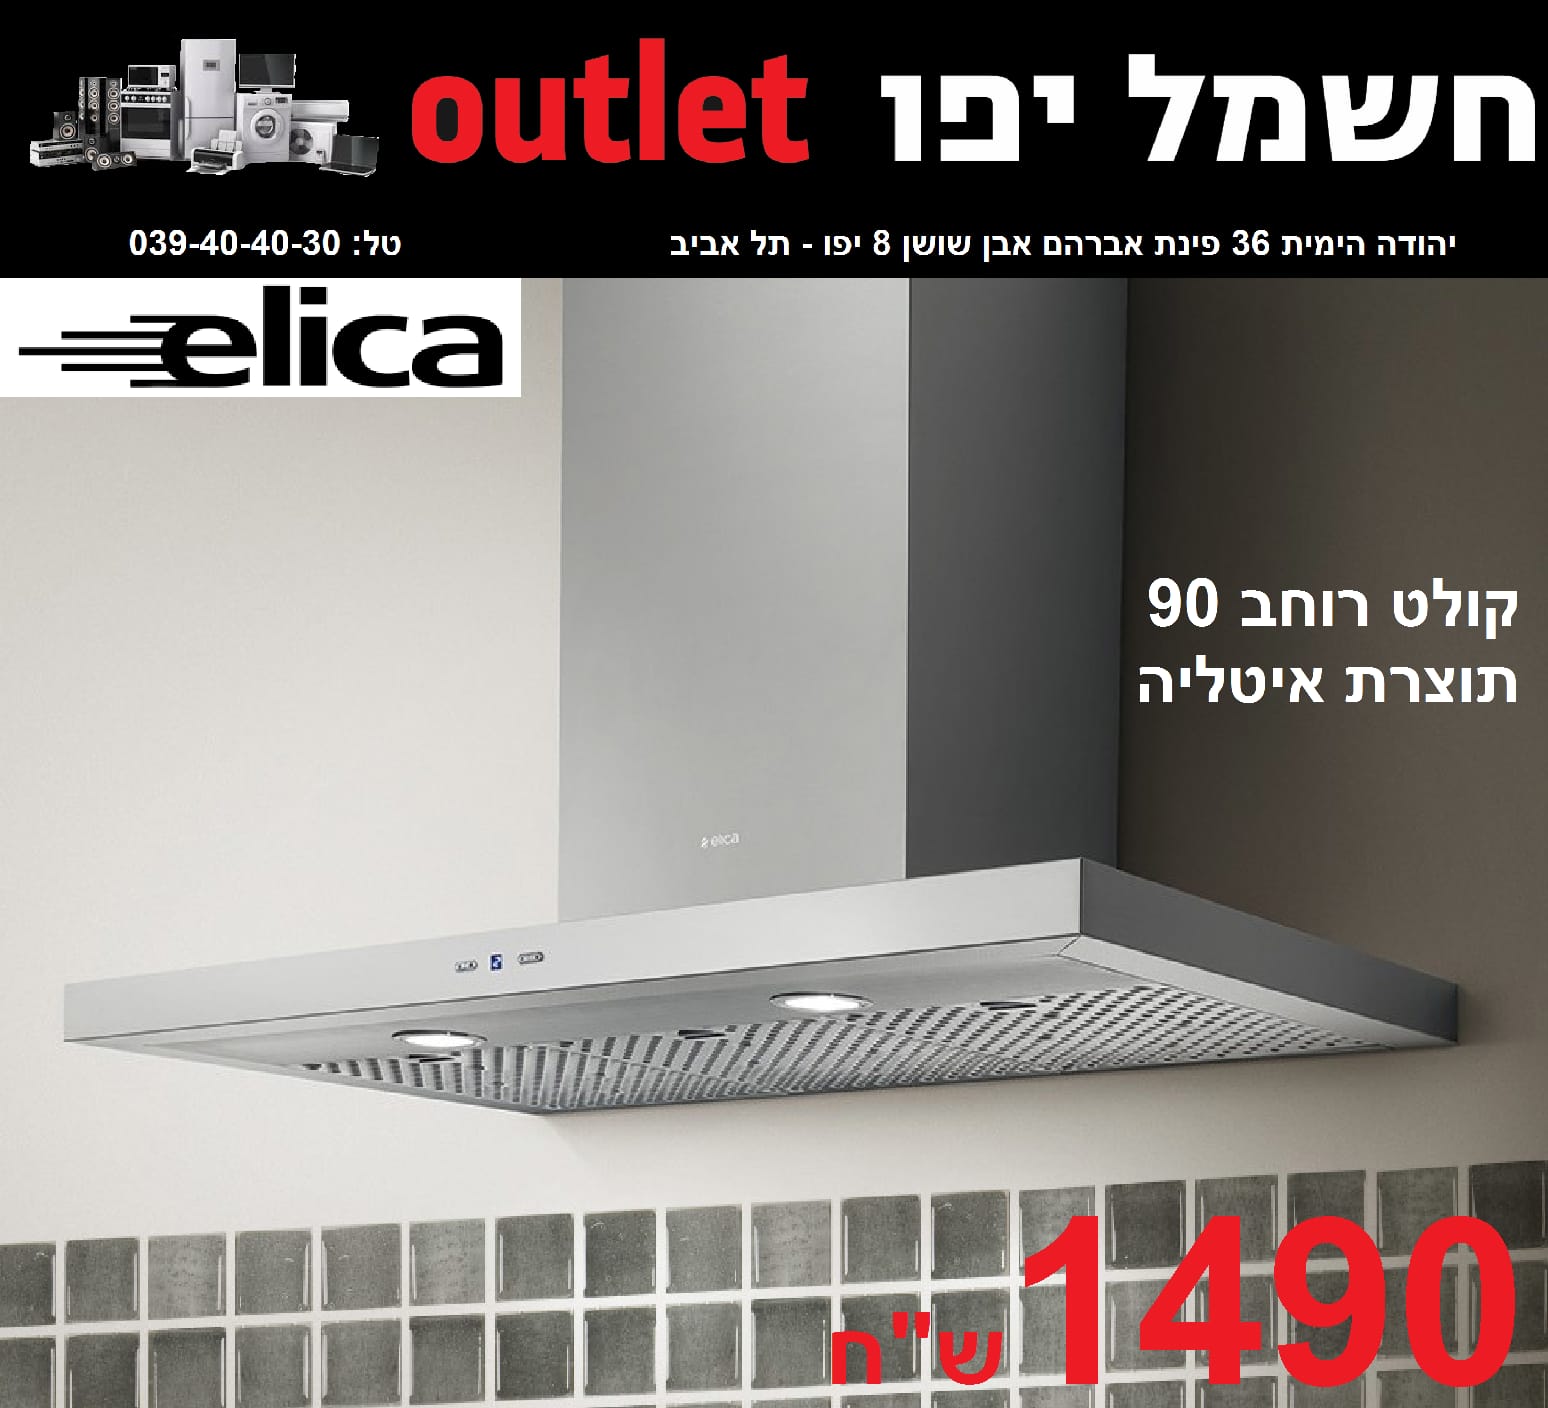  حملة تخفيضات جديدة على الأسعار في صالة كهرباء يافا OUTLET 